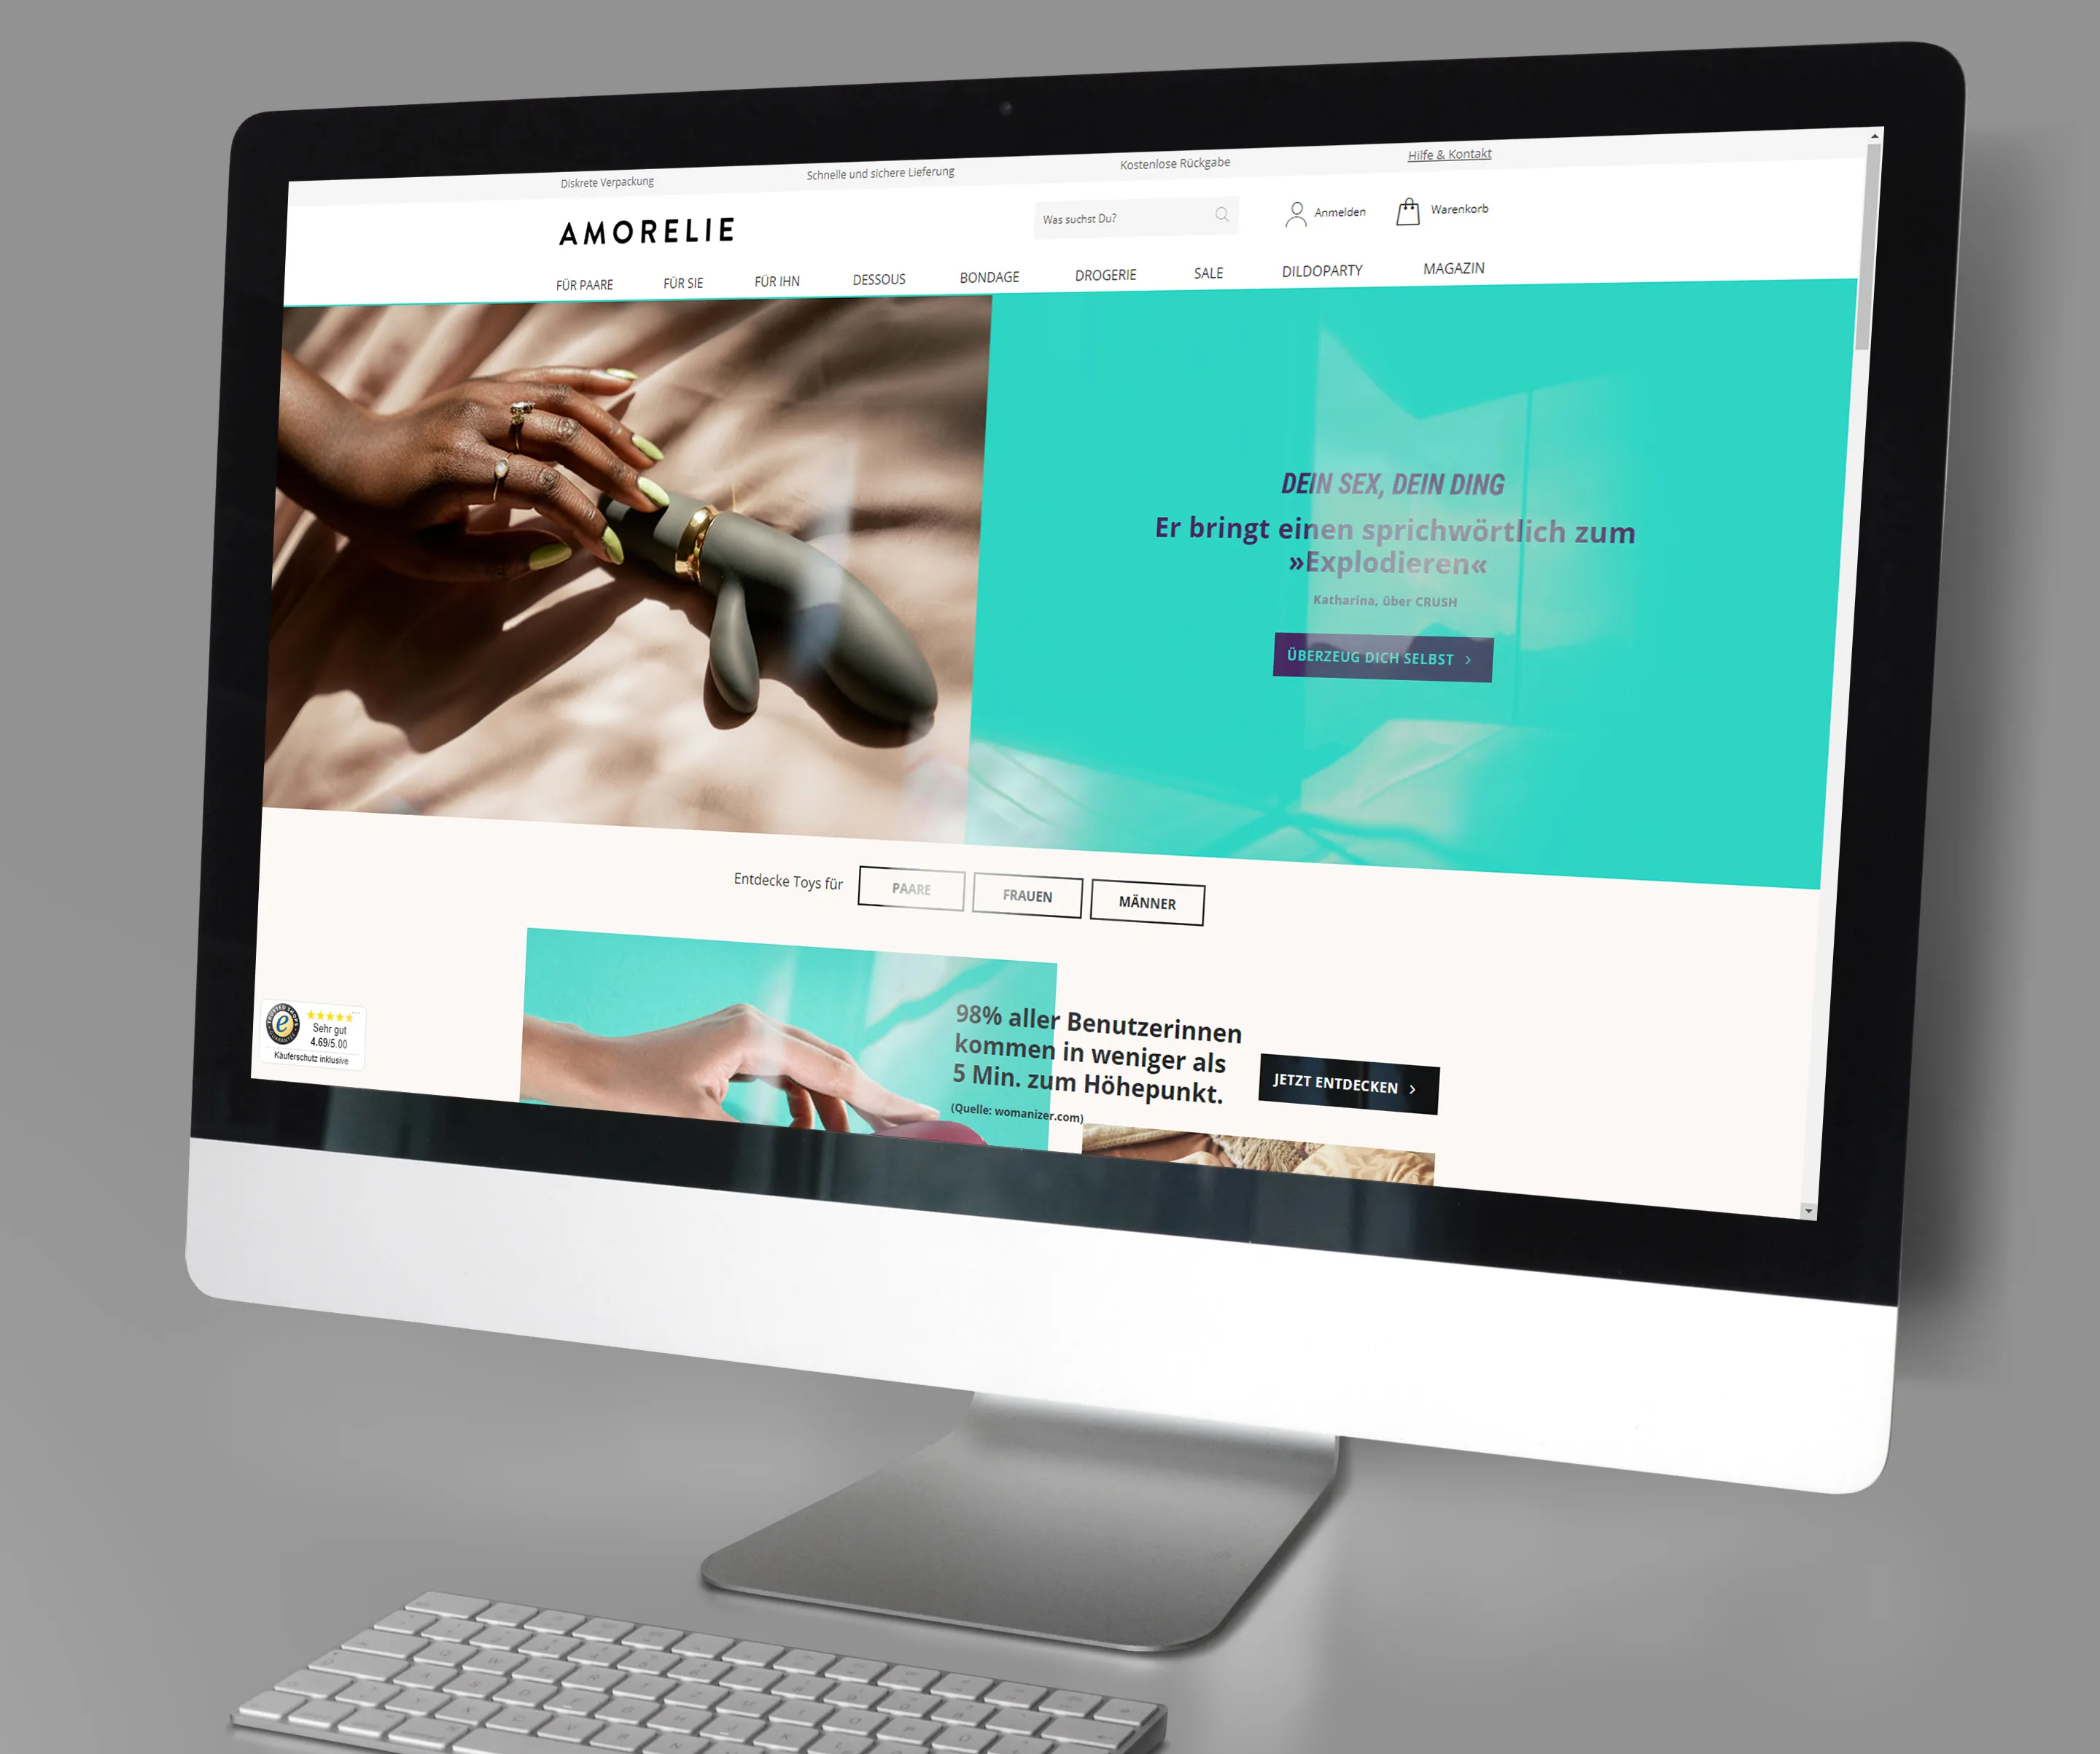 Corporate Identity & Design: UI eines Online-Shops